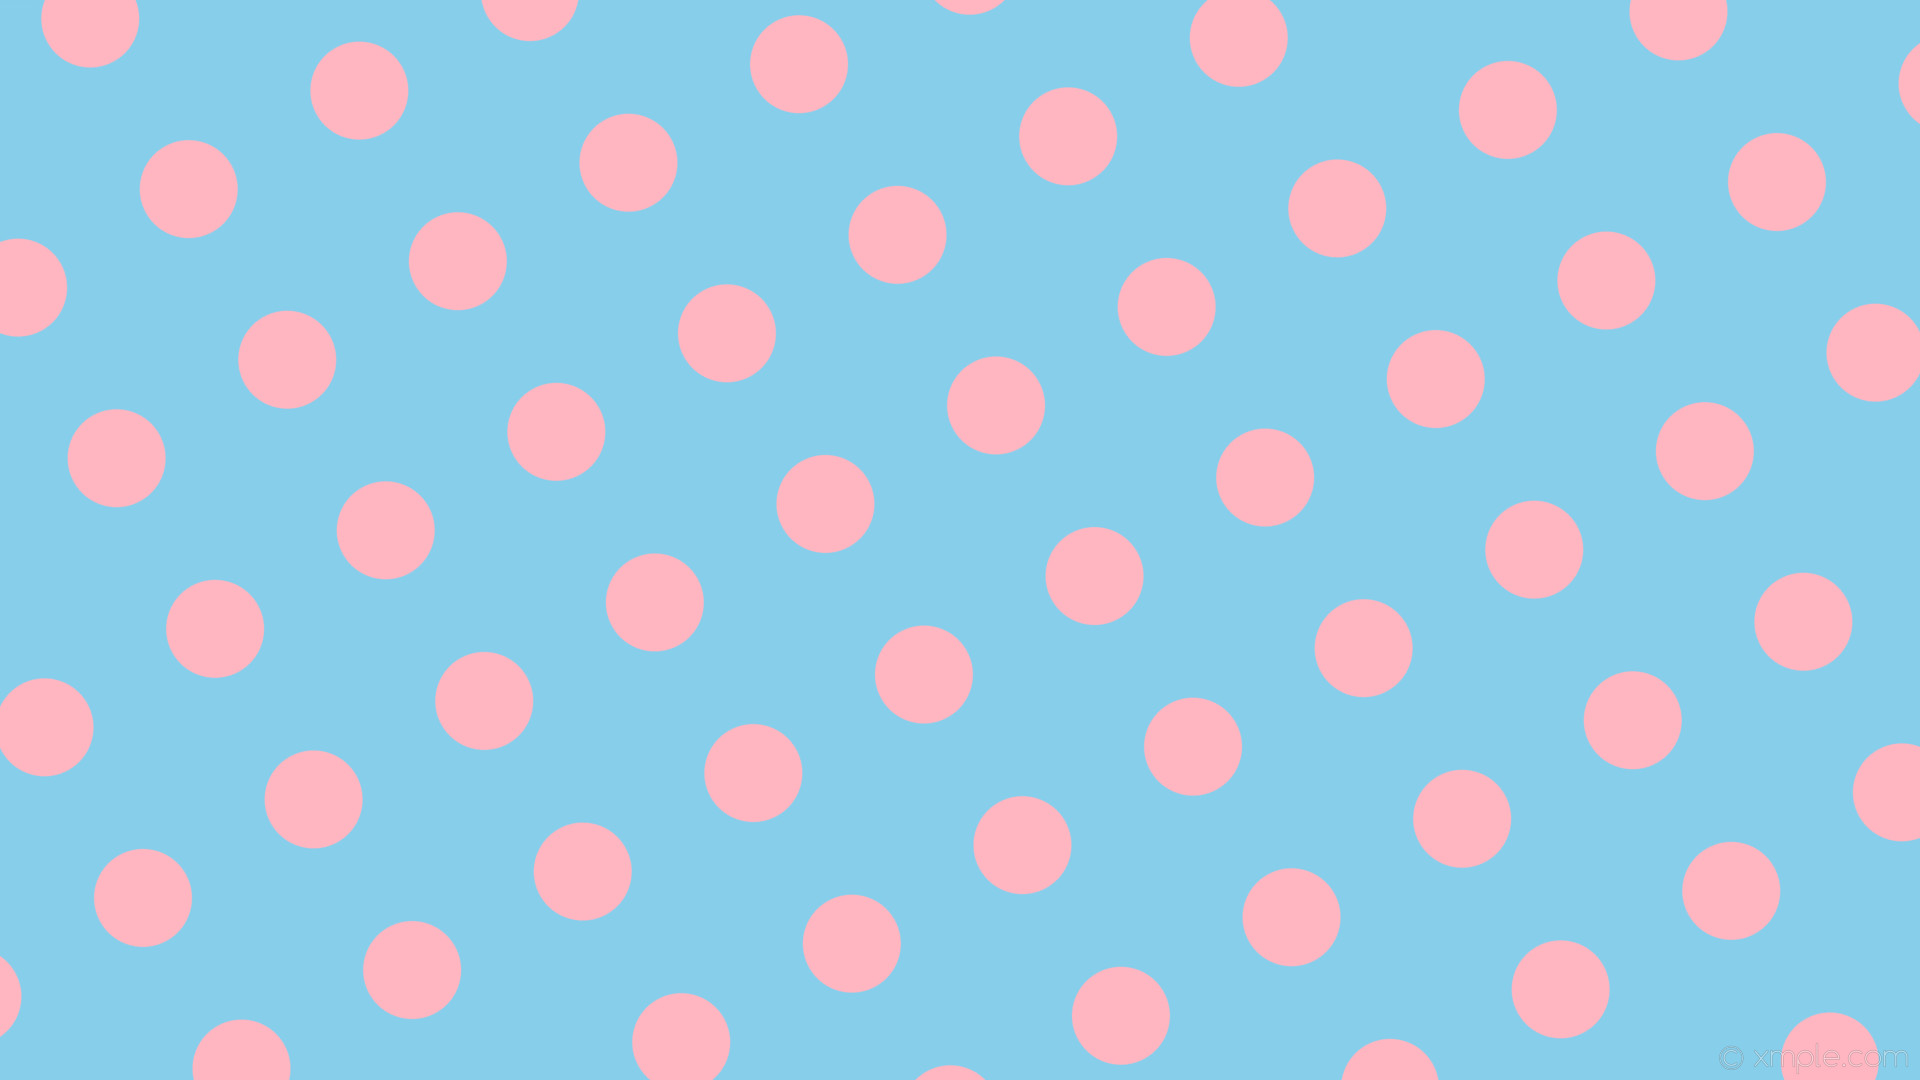 Wallpaper spots polka dots blue pink sky blue light pink ceeb #ffb6c1 30